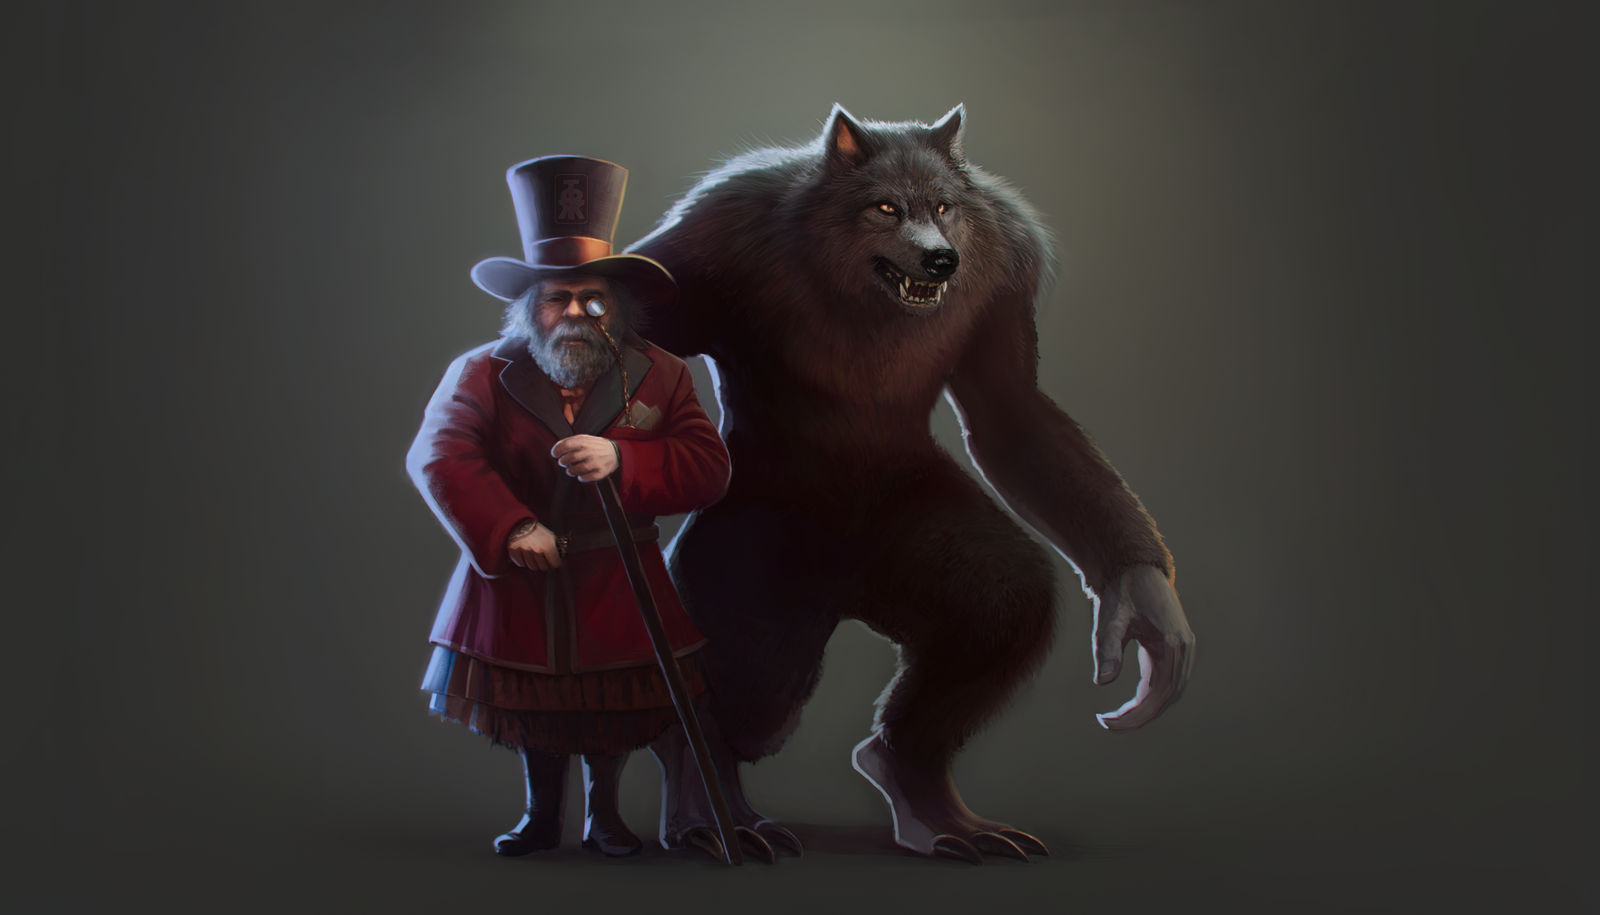 20230425 Victorian Age Dwarf Werewolf by tfernandesart on DeviantArt